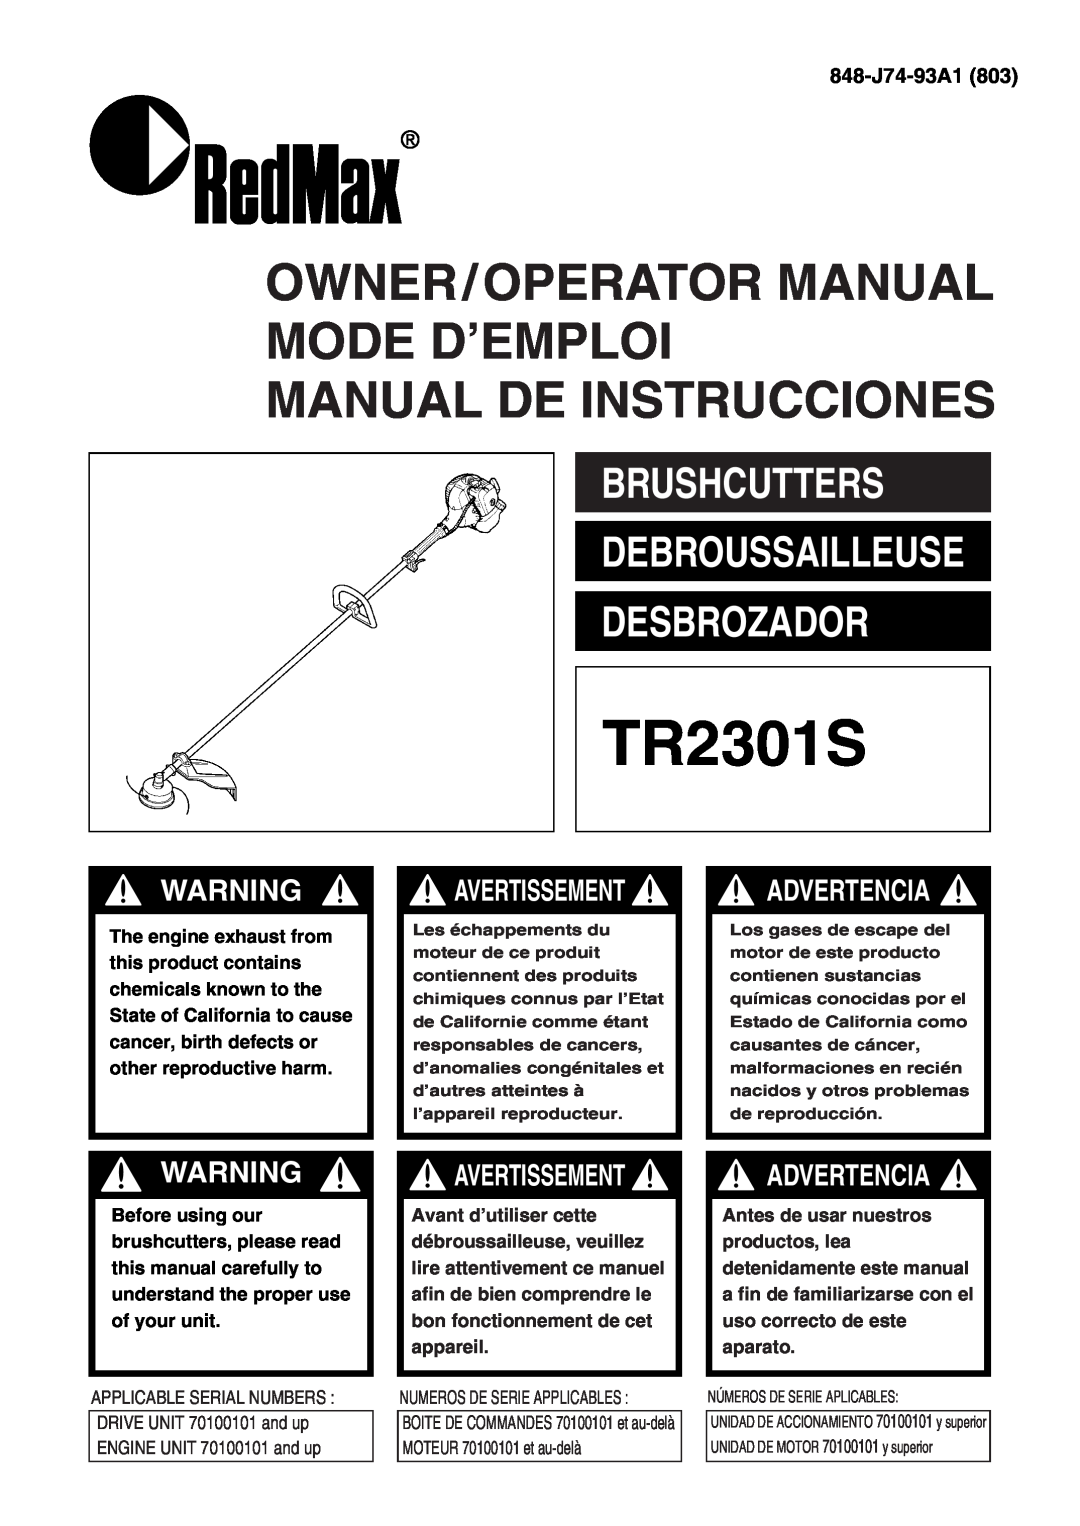 Zenoah TR2301S manual 848-J74-93A1803, Owner/Operator Manual Mode D’Emploi, Manual De Instrucciones, Advertencia 